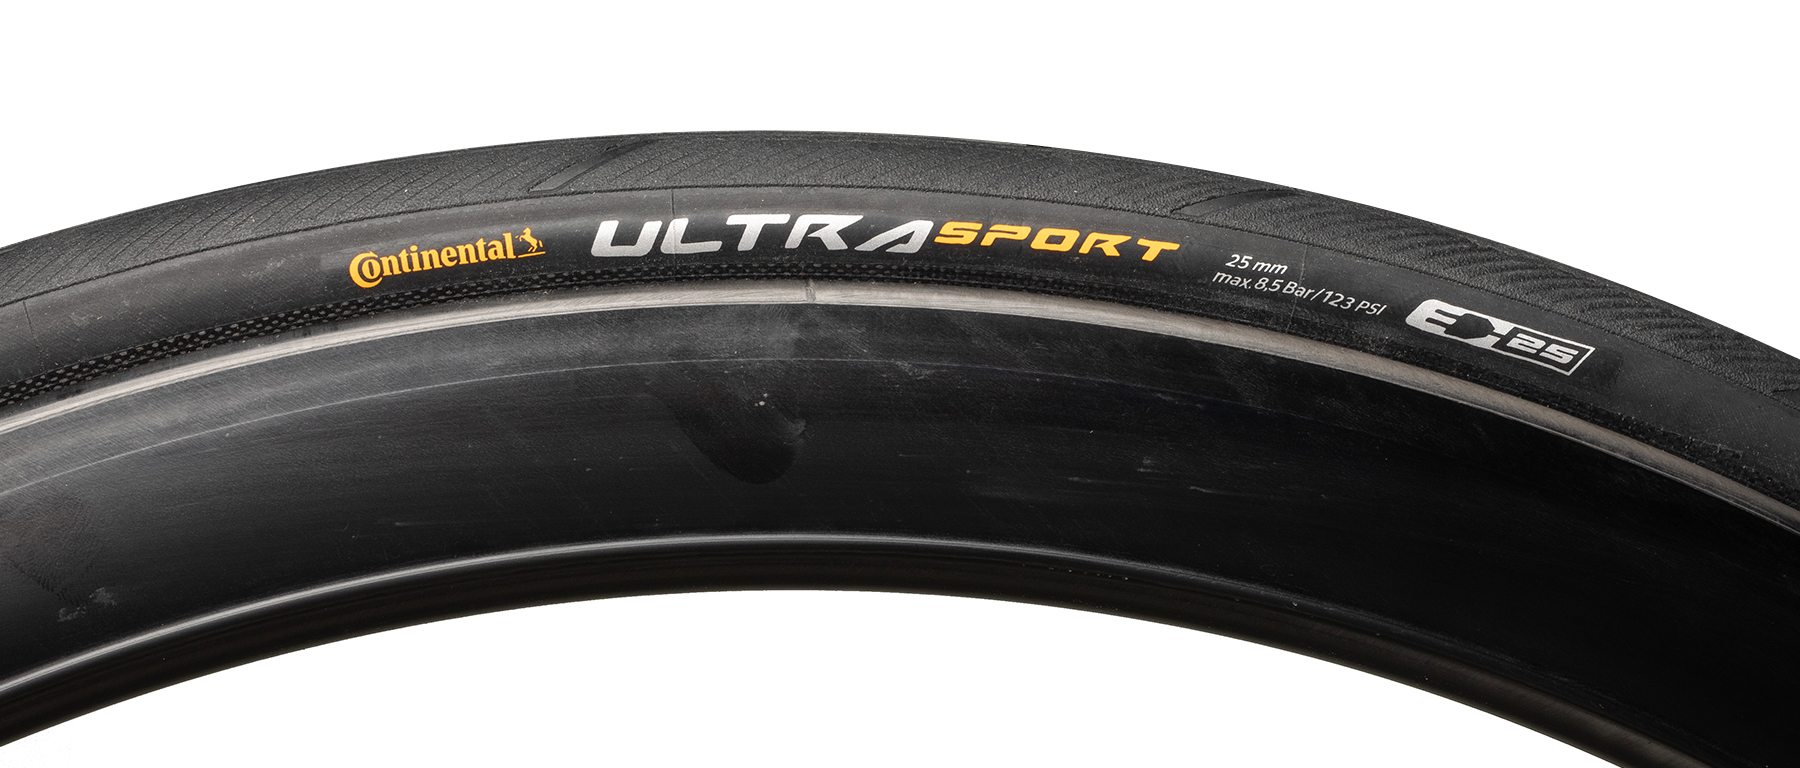 Continental Ultra Sport III Road Tire